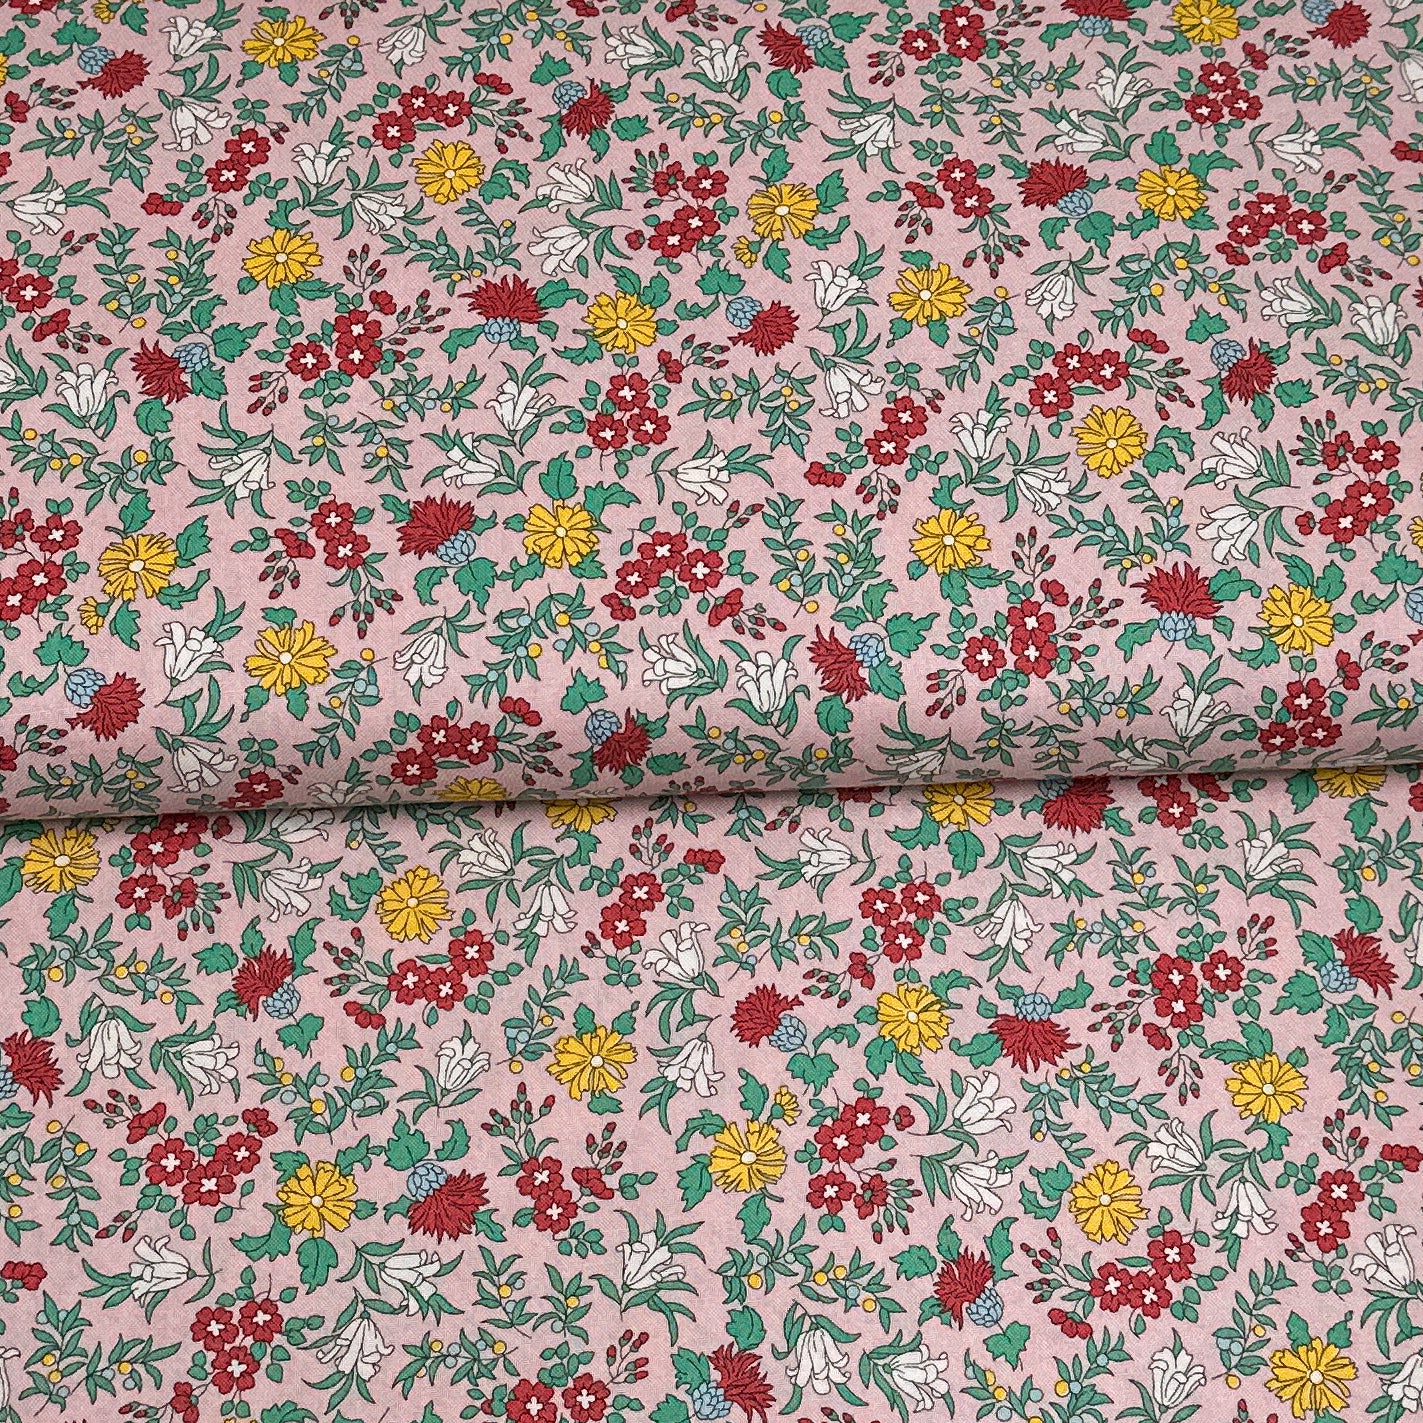 Nature’s garden rose - Liberty Fabrics - Coton imprimé